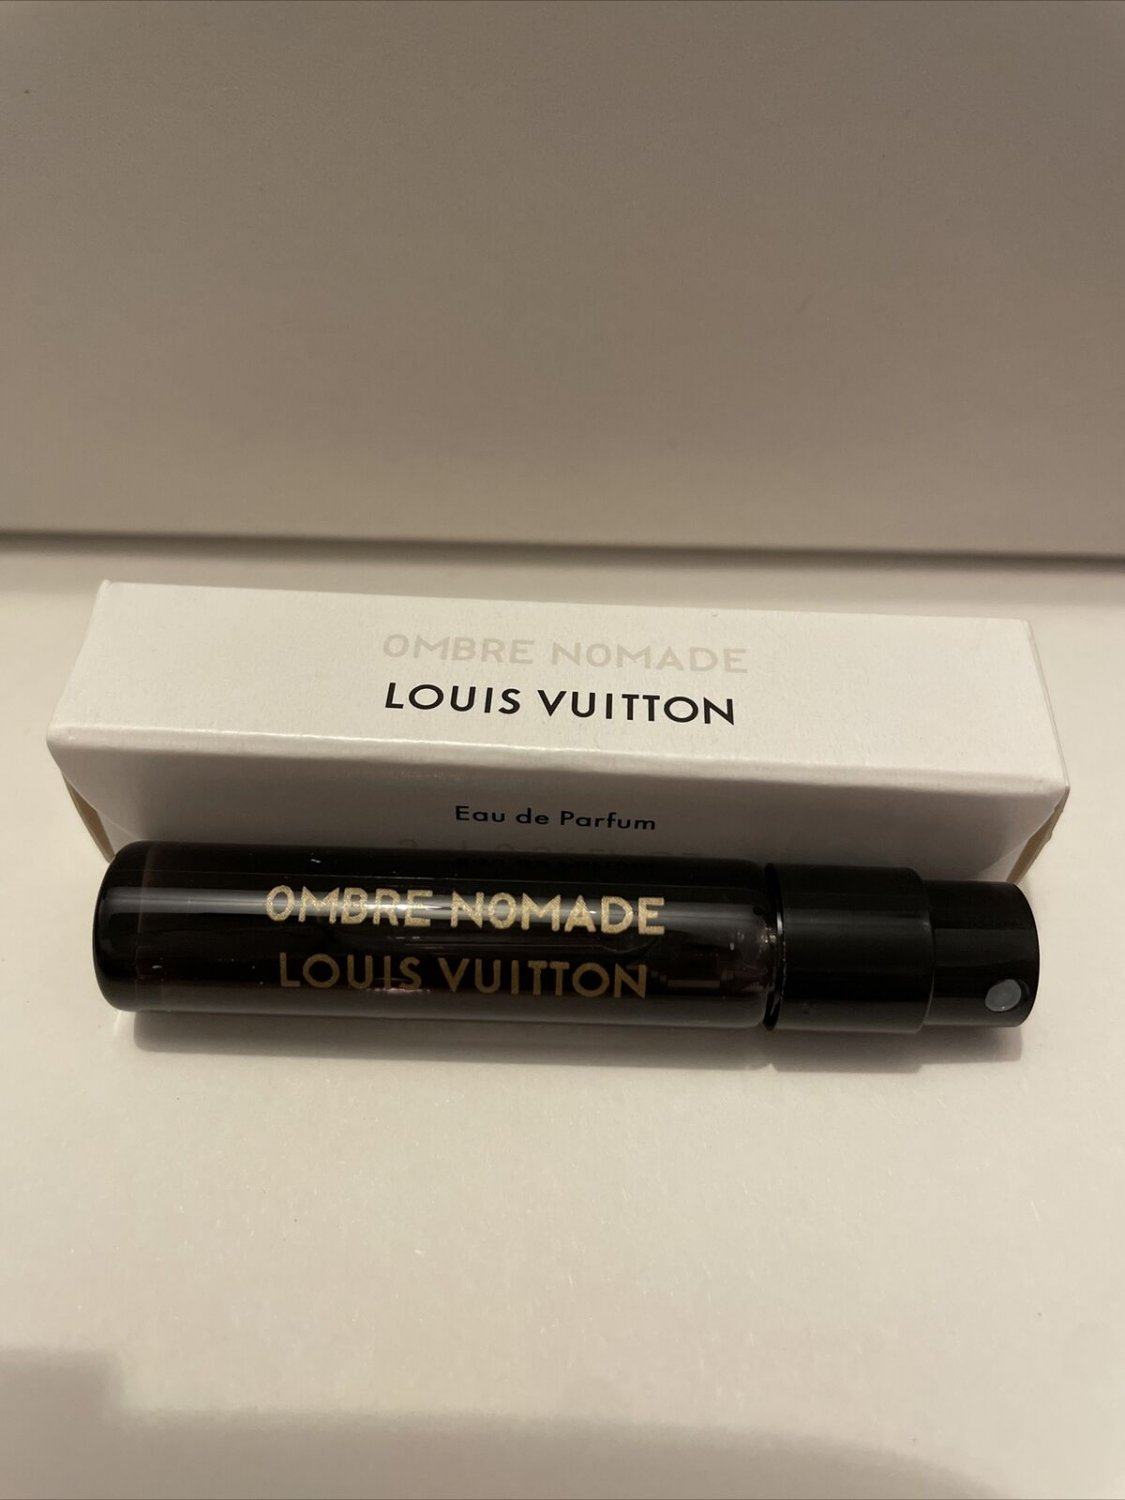 LOUIS VUITTON OMBRE NOMADE Perfume Sample, Eau de Parfum 0.06 ml Spray